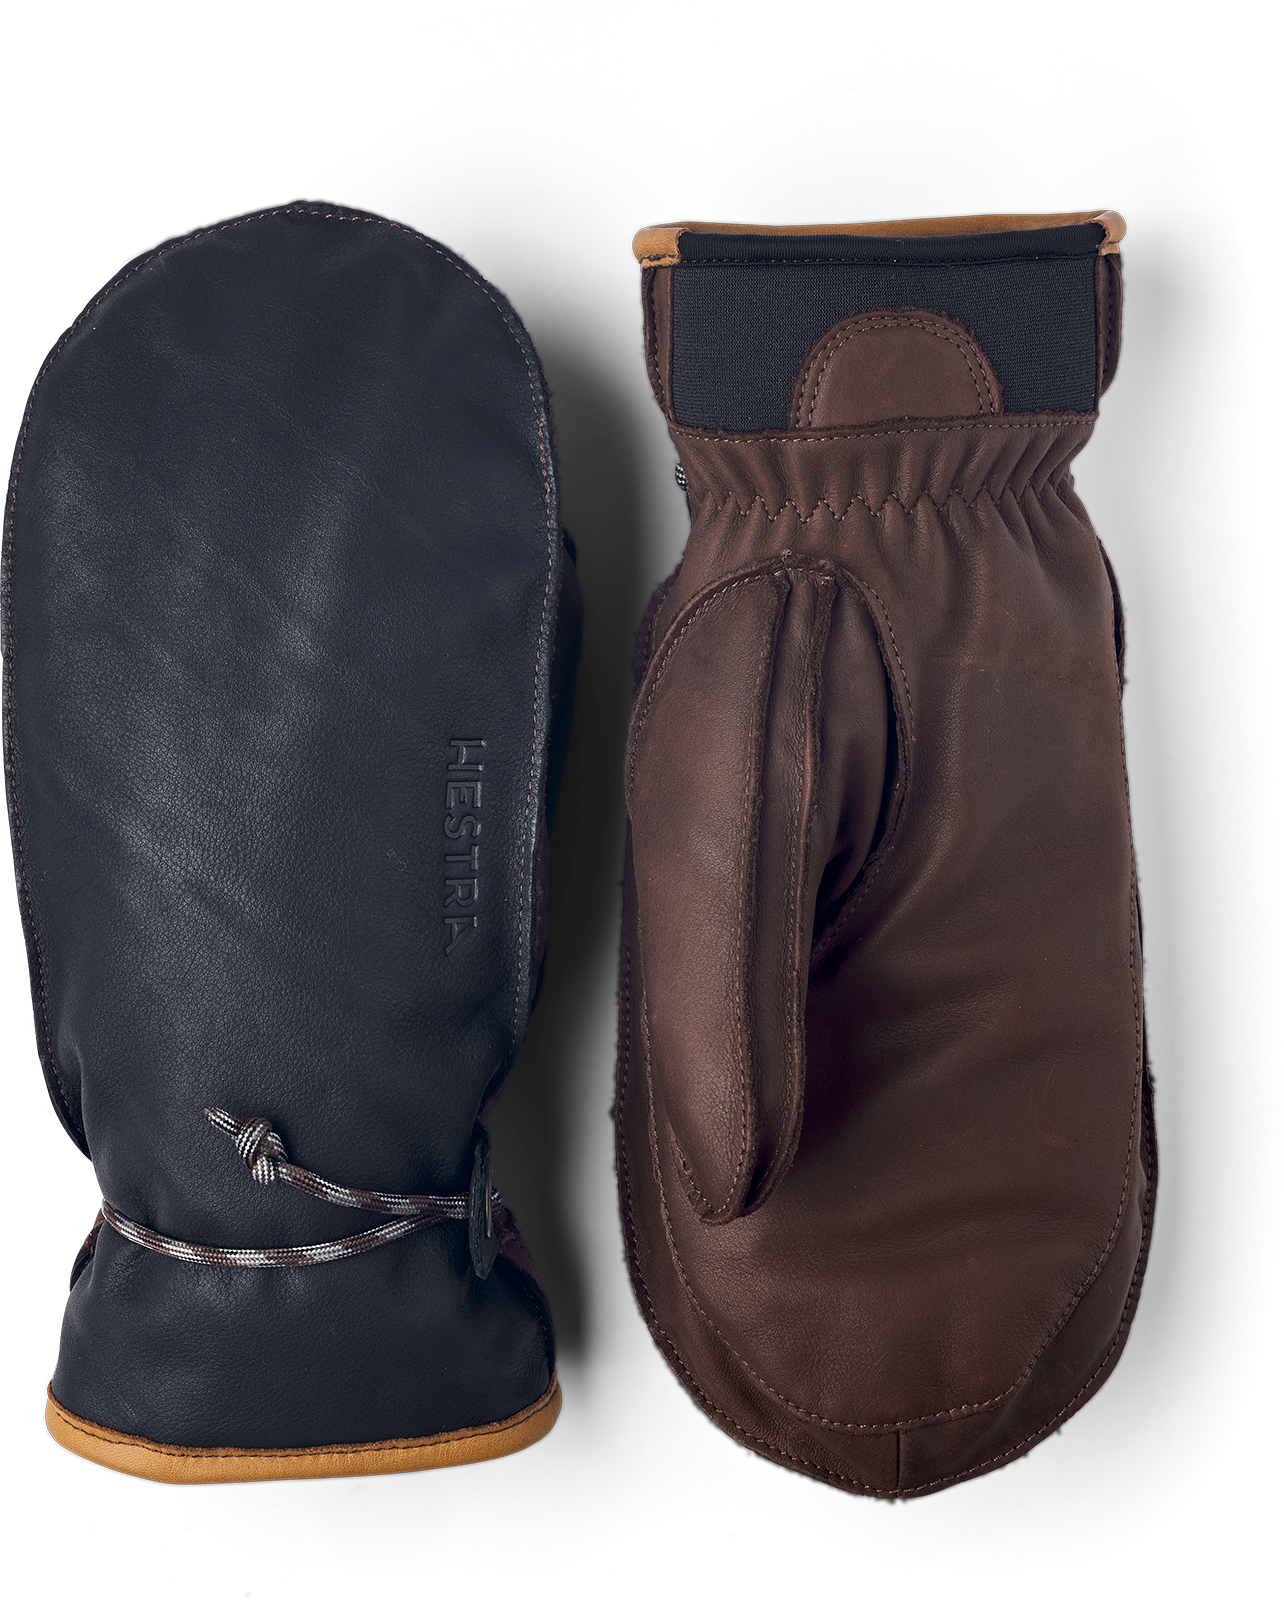 Wakayama Mitt - Navy & Brown | Hestra Gloves